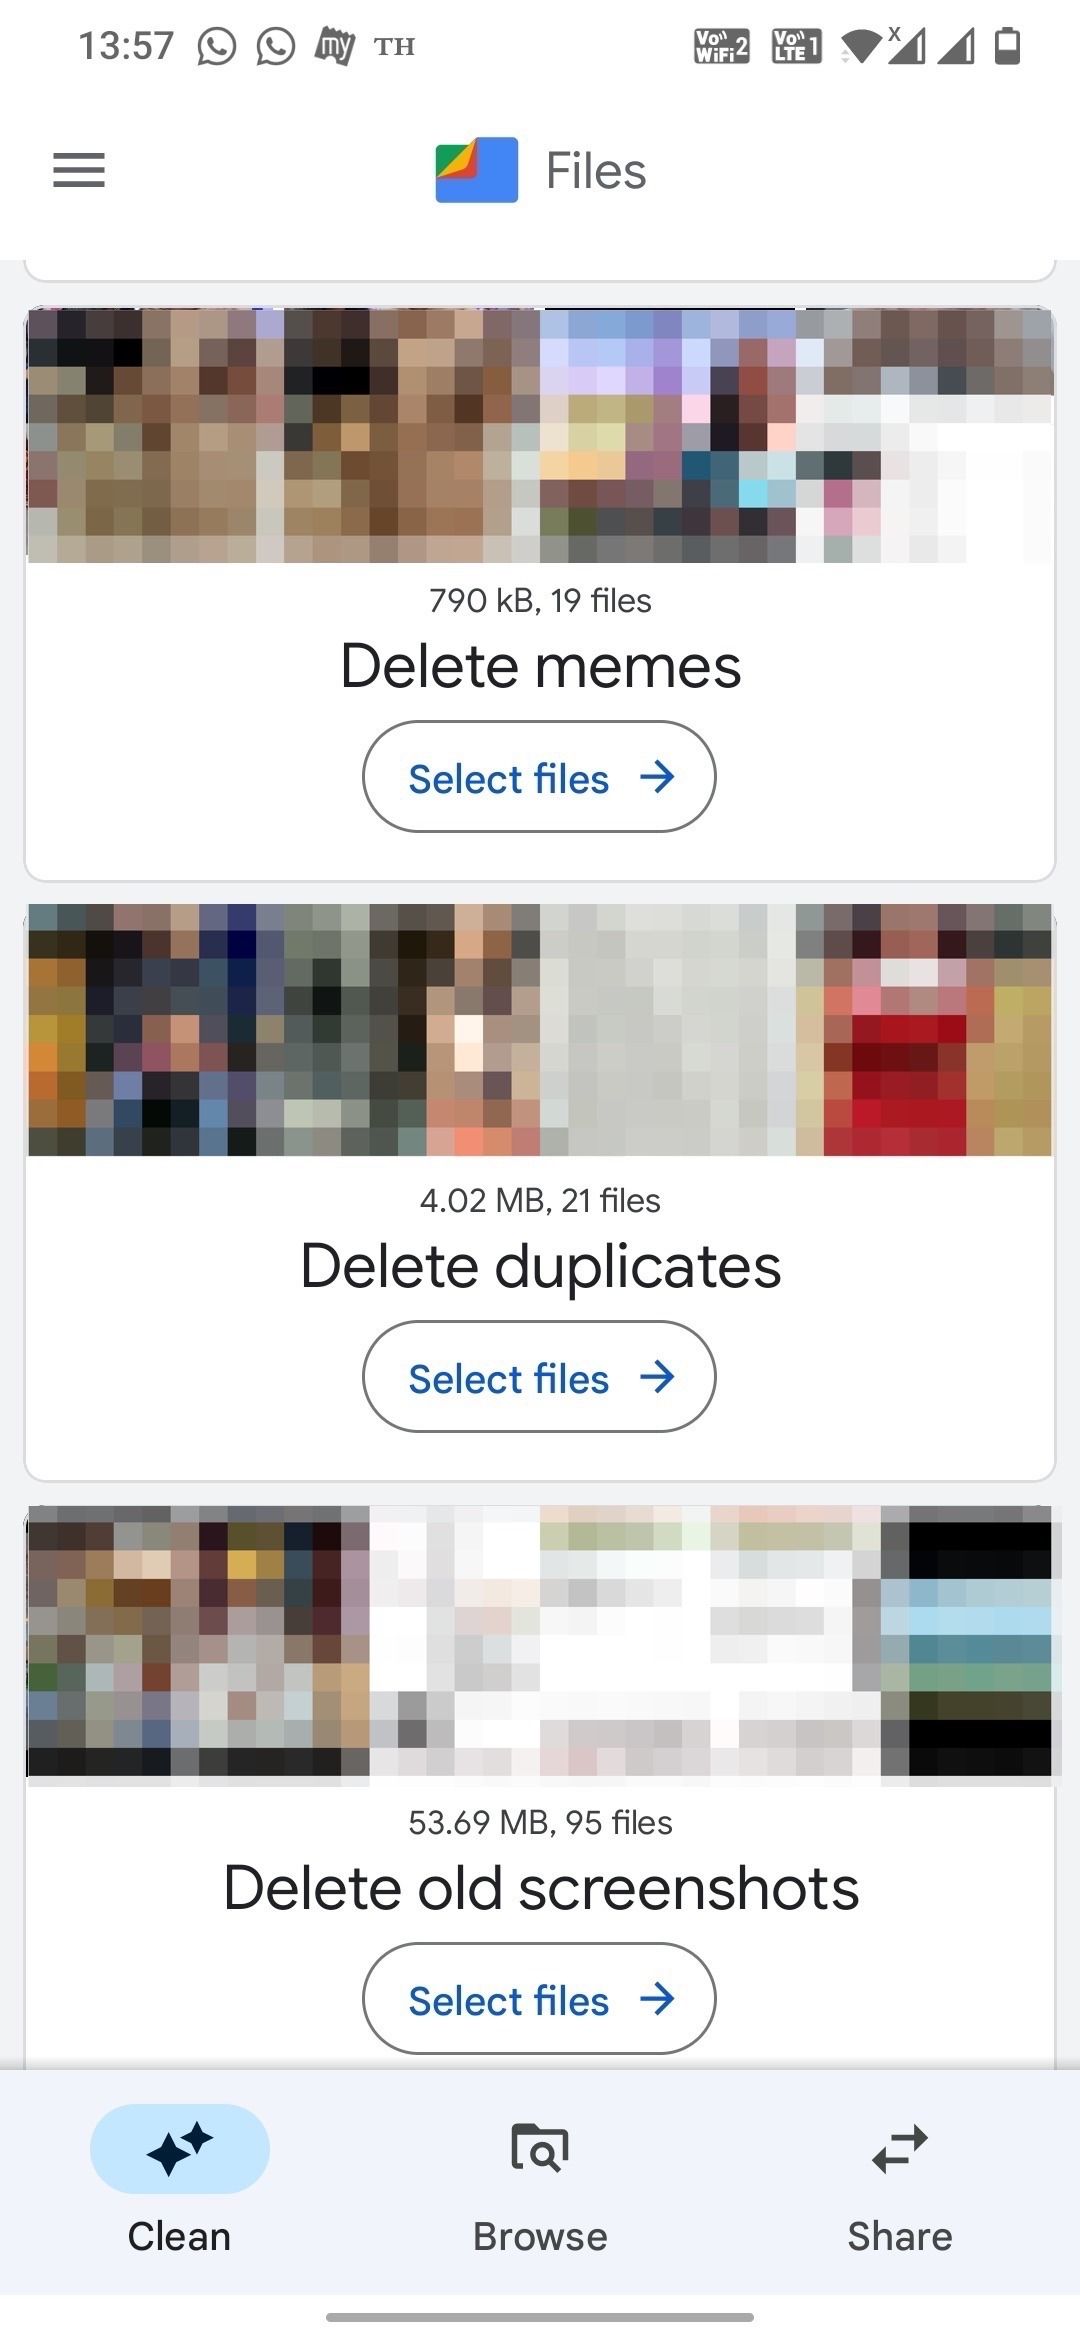 Google Files app Clean tab screenshot